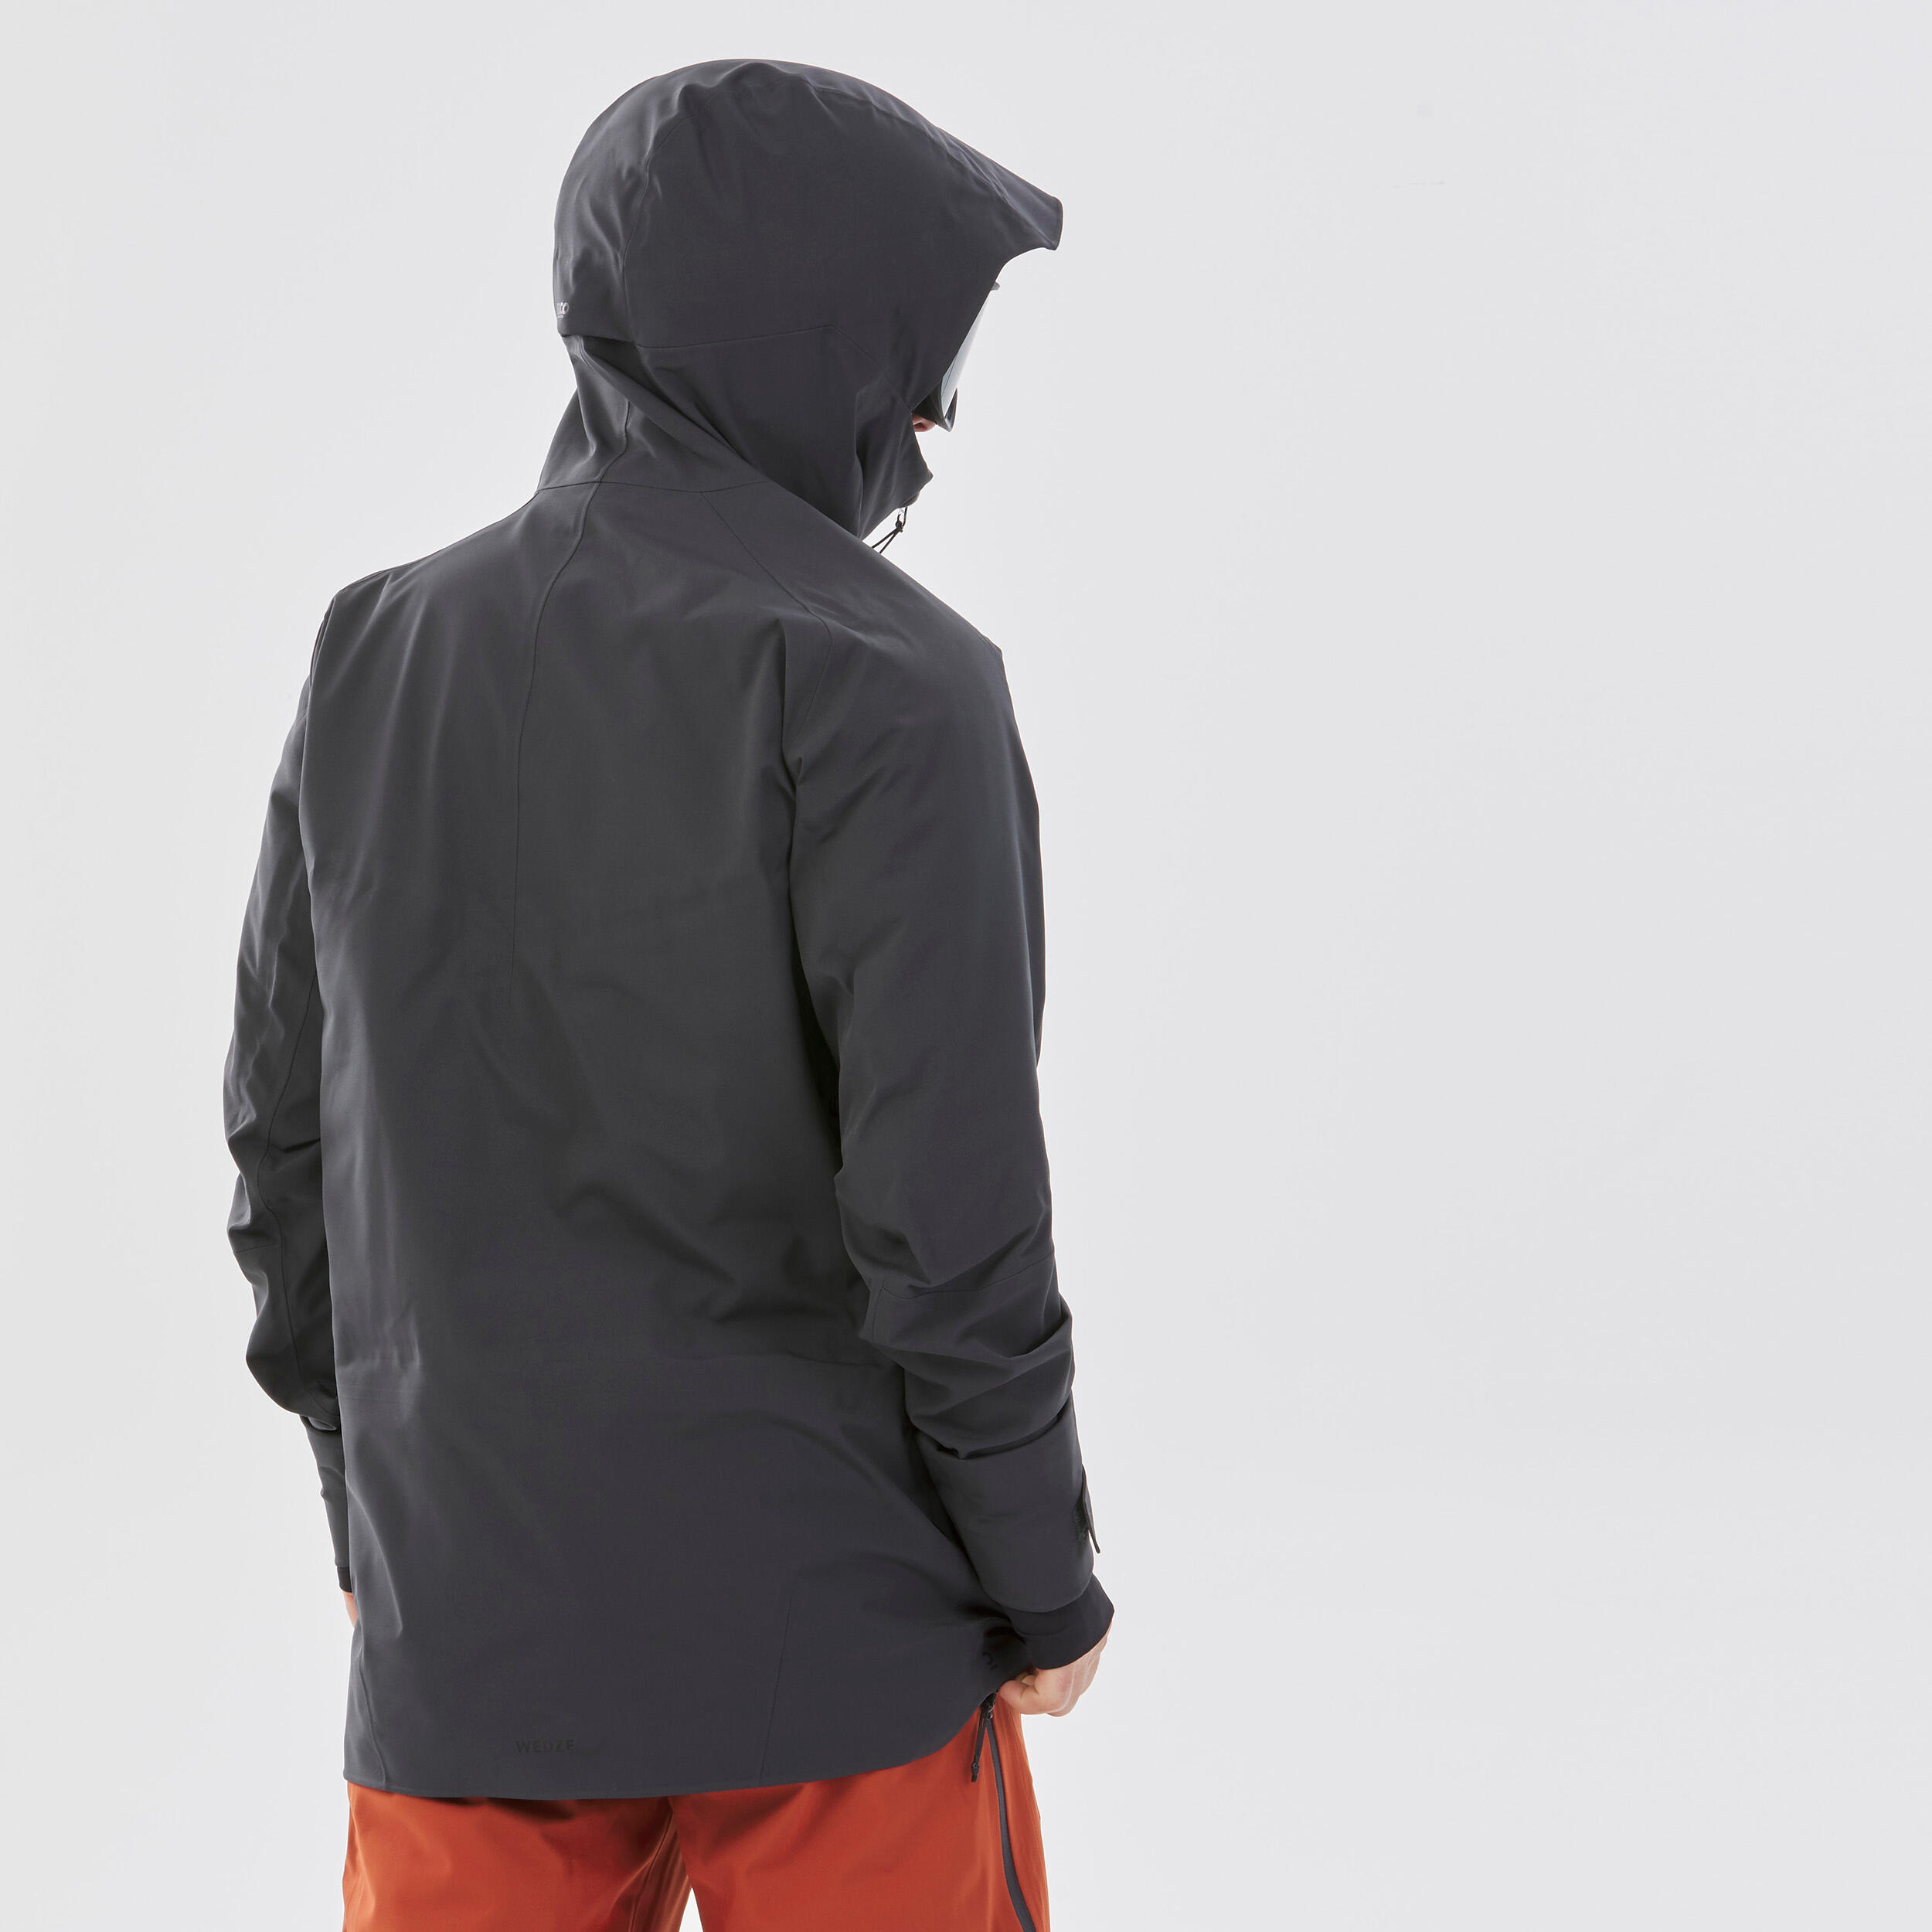 Manteau de ski homme – FR 500 gris - WEDZE